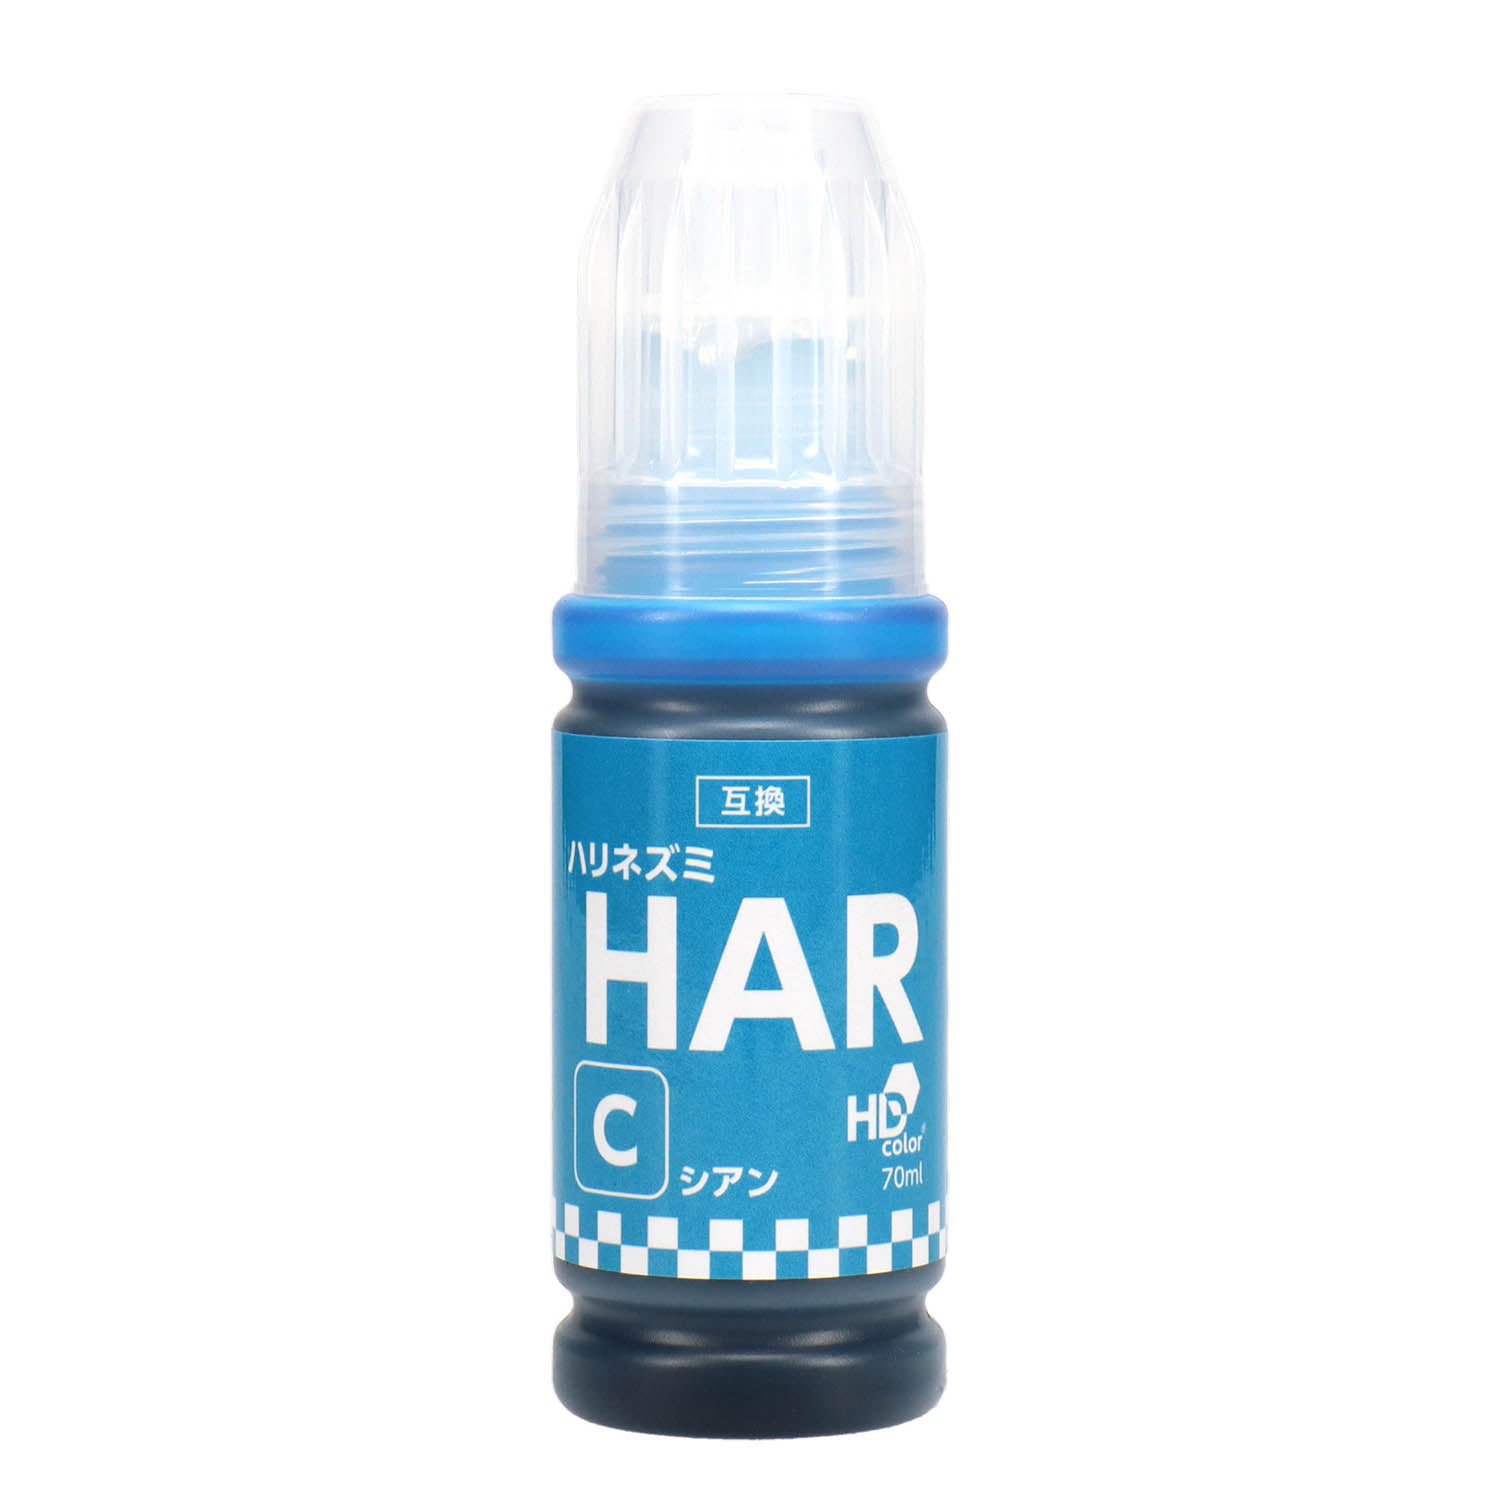 エプソン用 HAR-C (ハリネズミ) 互換インクボトル シアン